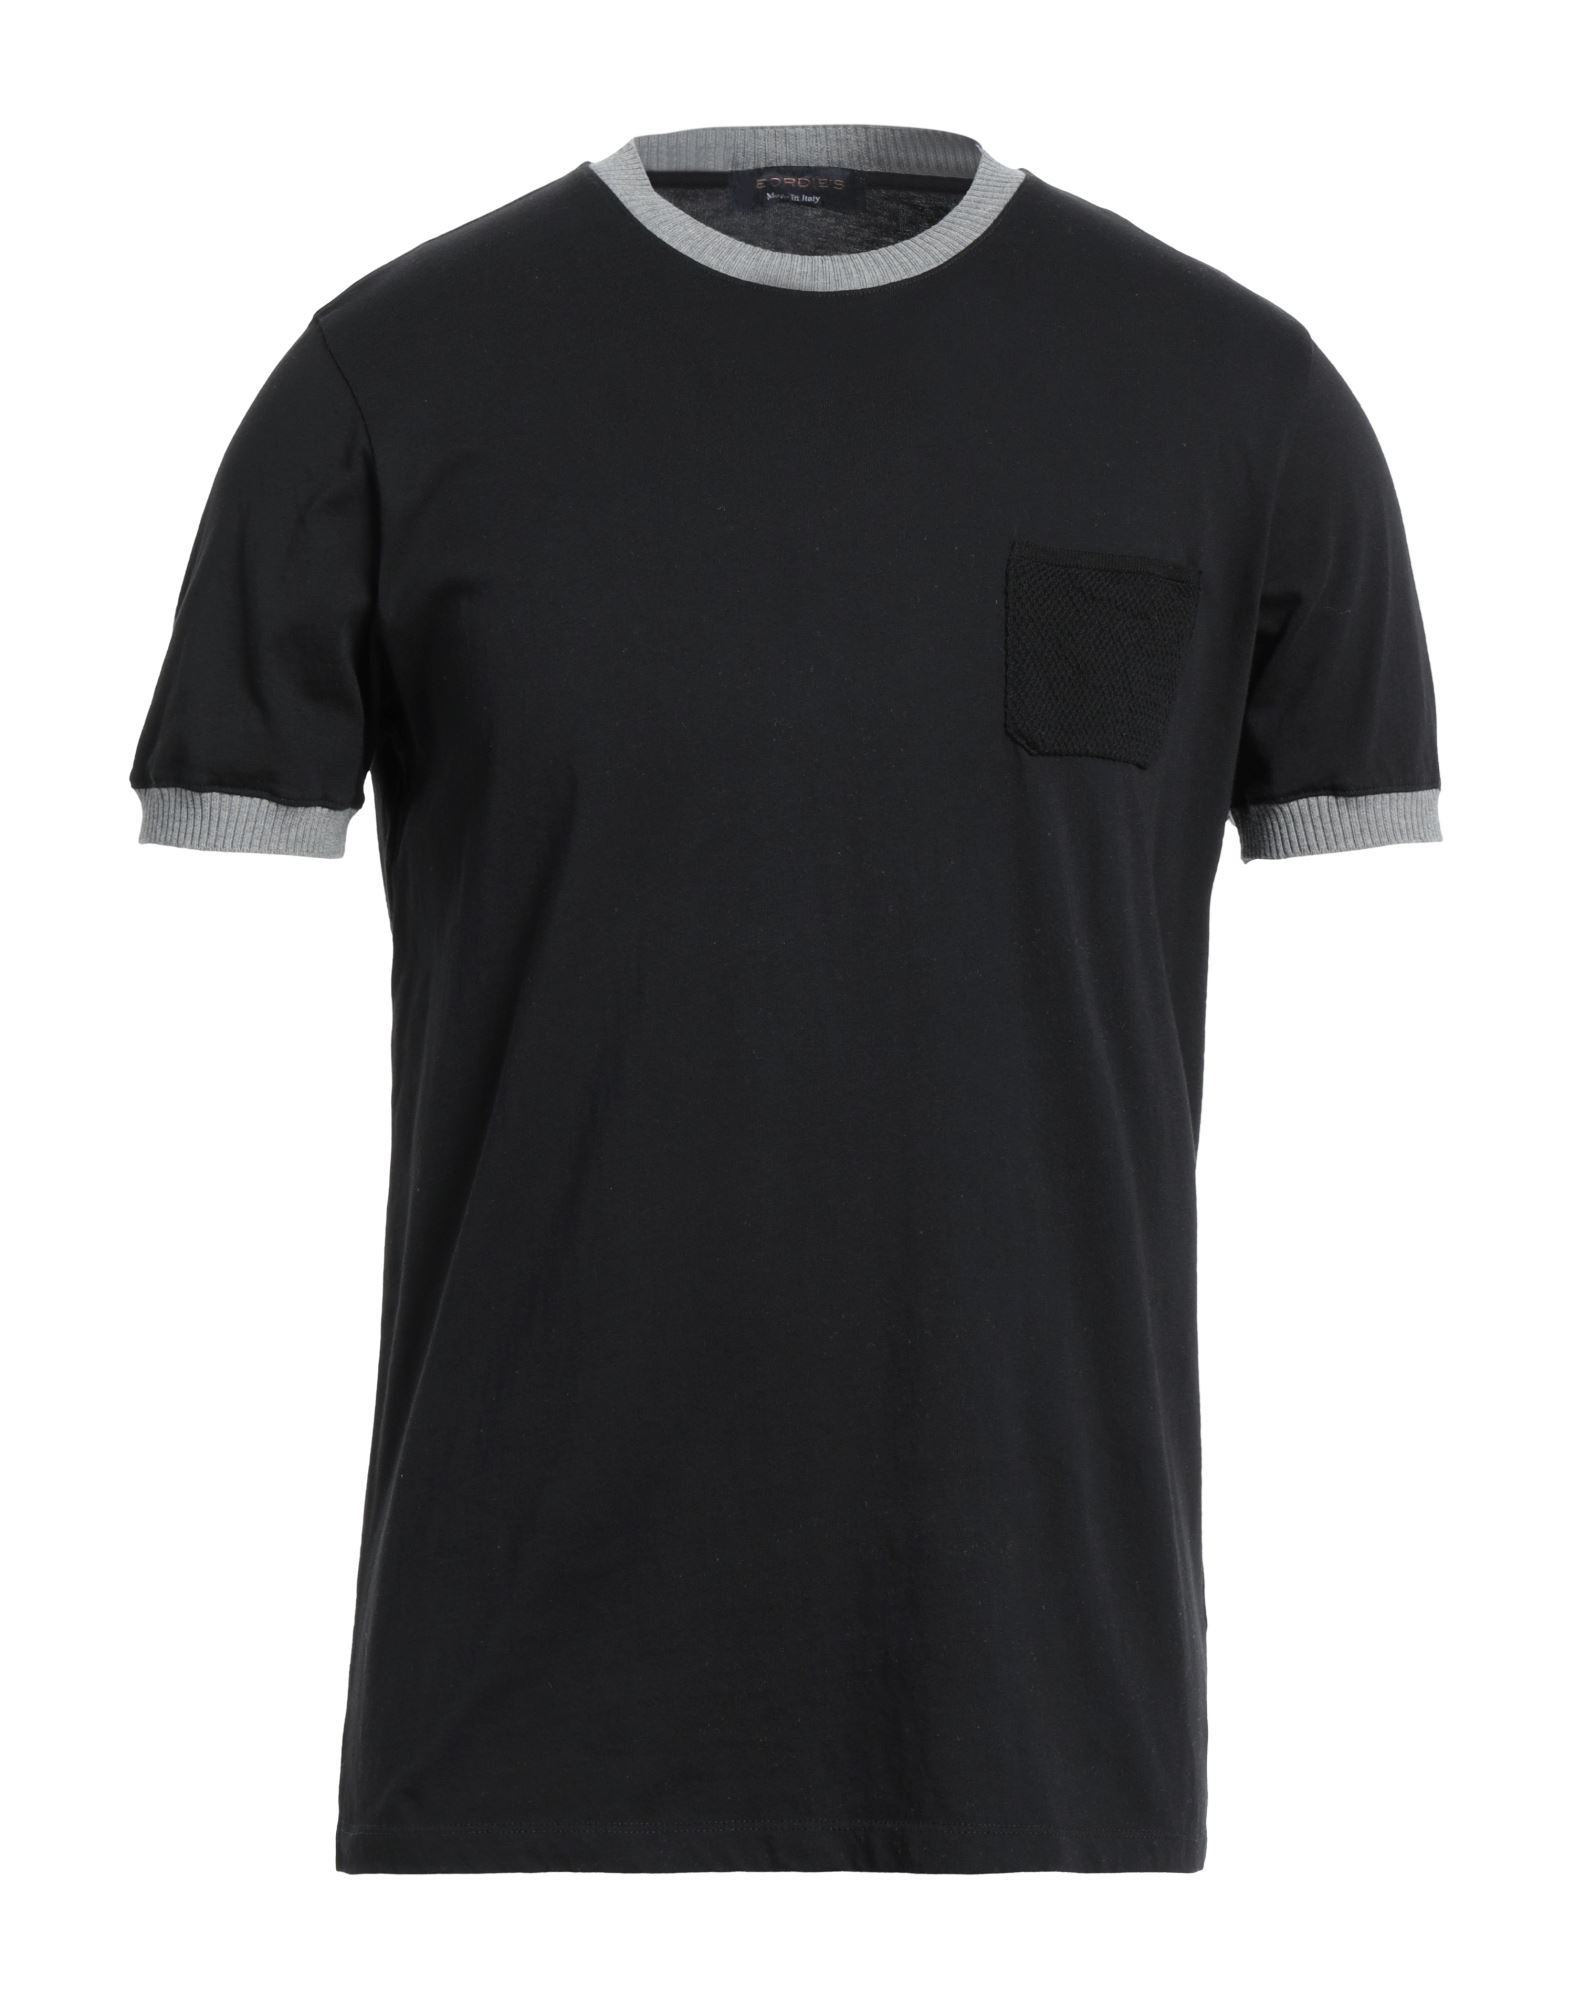 Shop Jeordie's Man T-shirt Black Size L Cotton